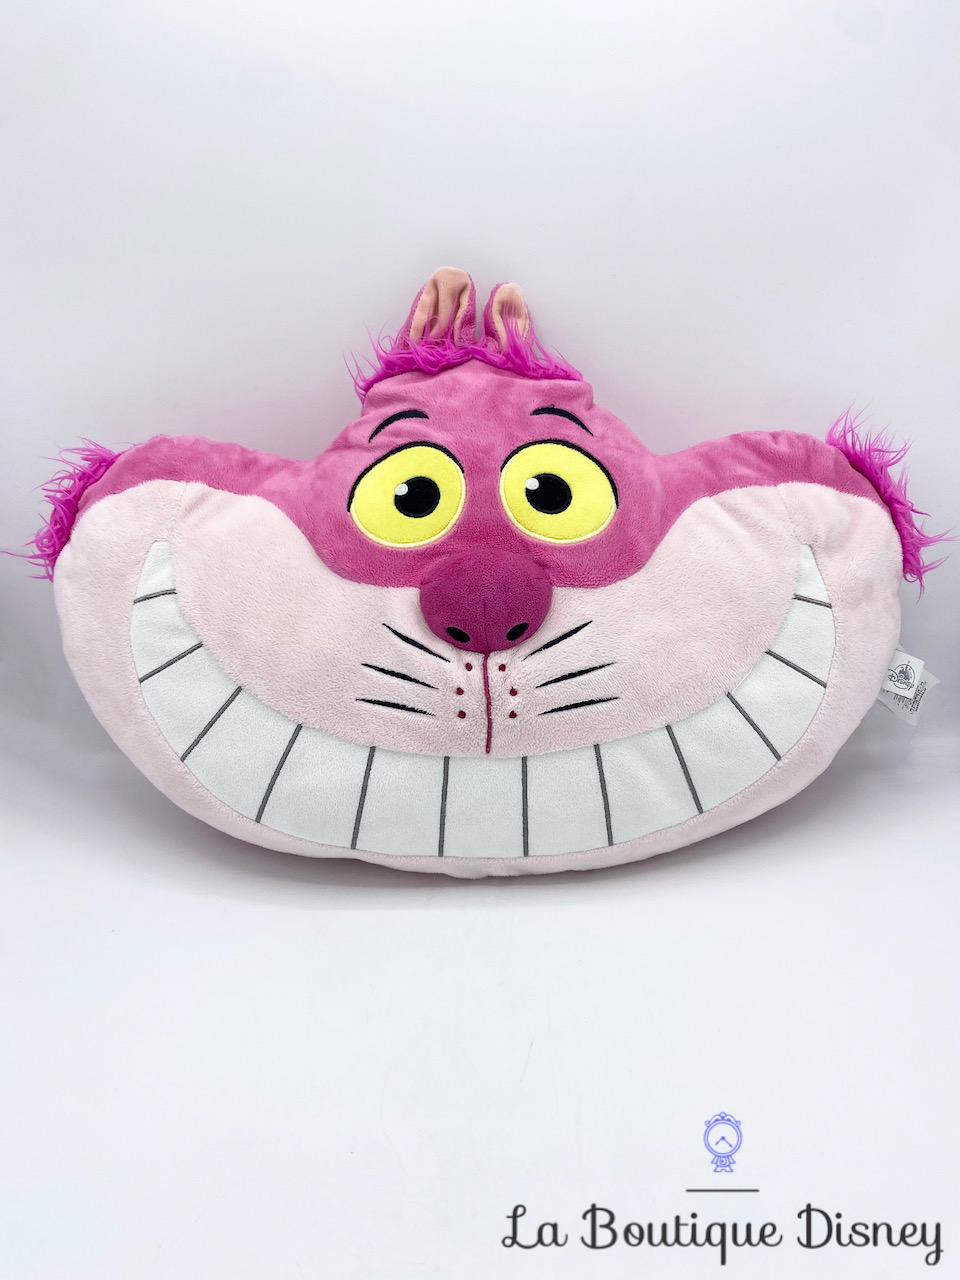 Coussin Chat Cheshire Disney Store 2017 Alice au pays des Merveilles peluche visage chat rose